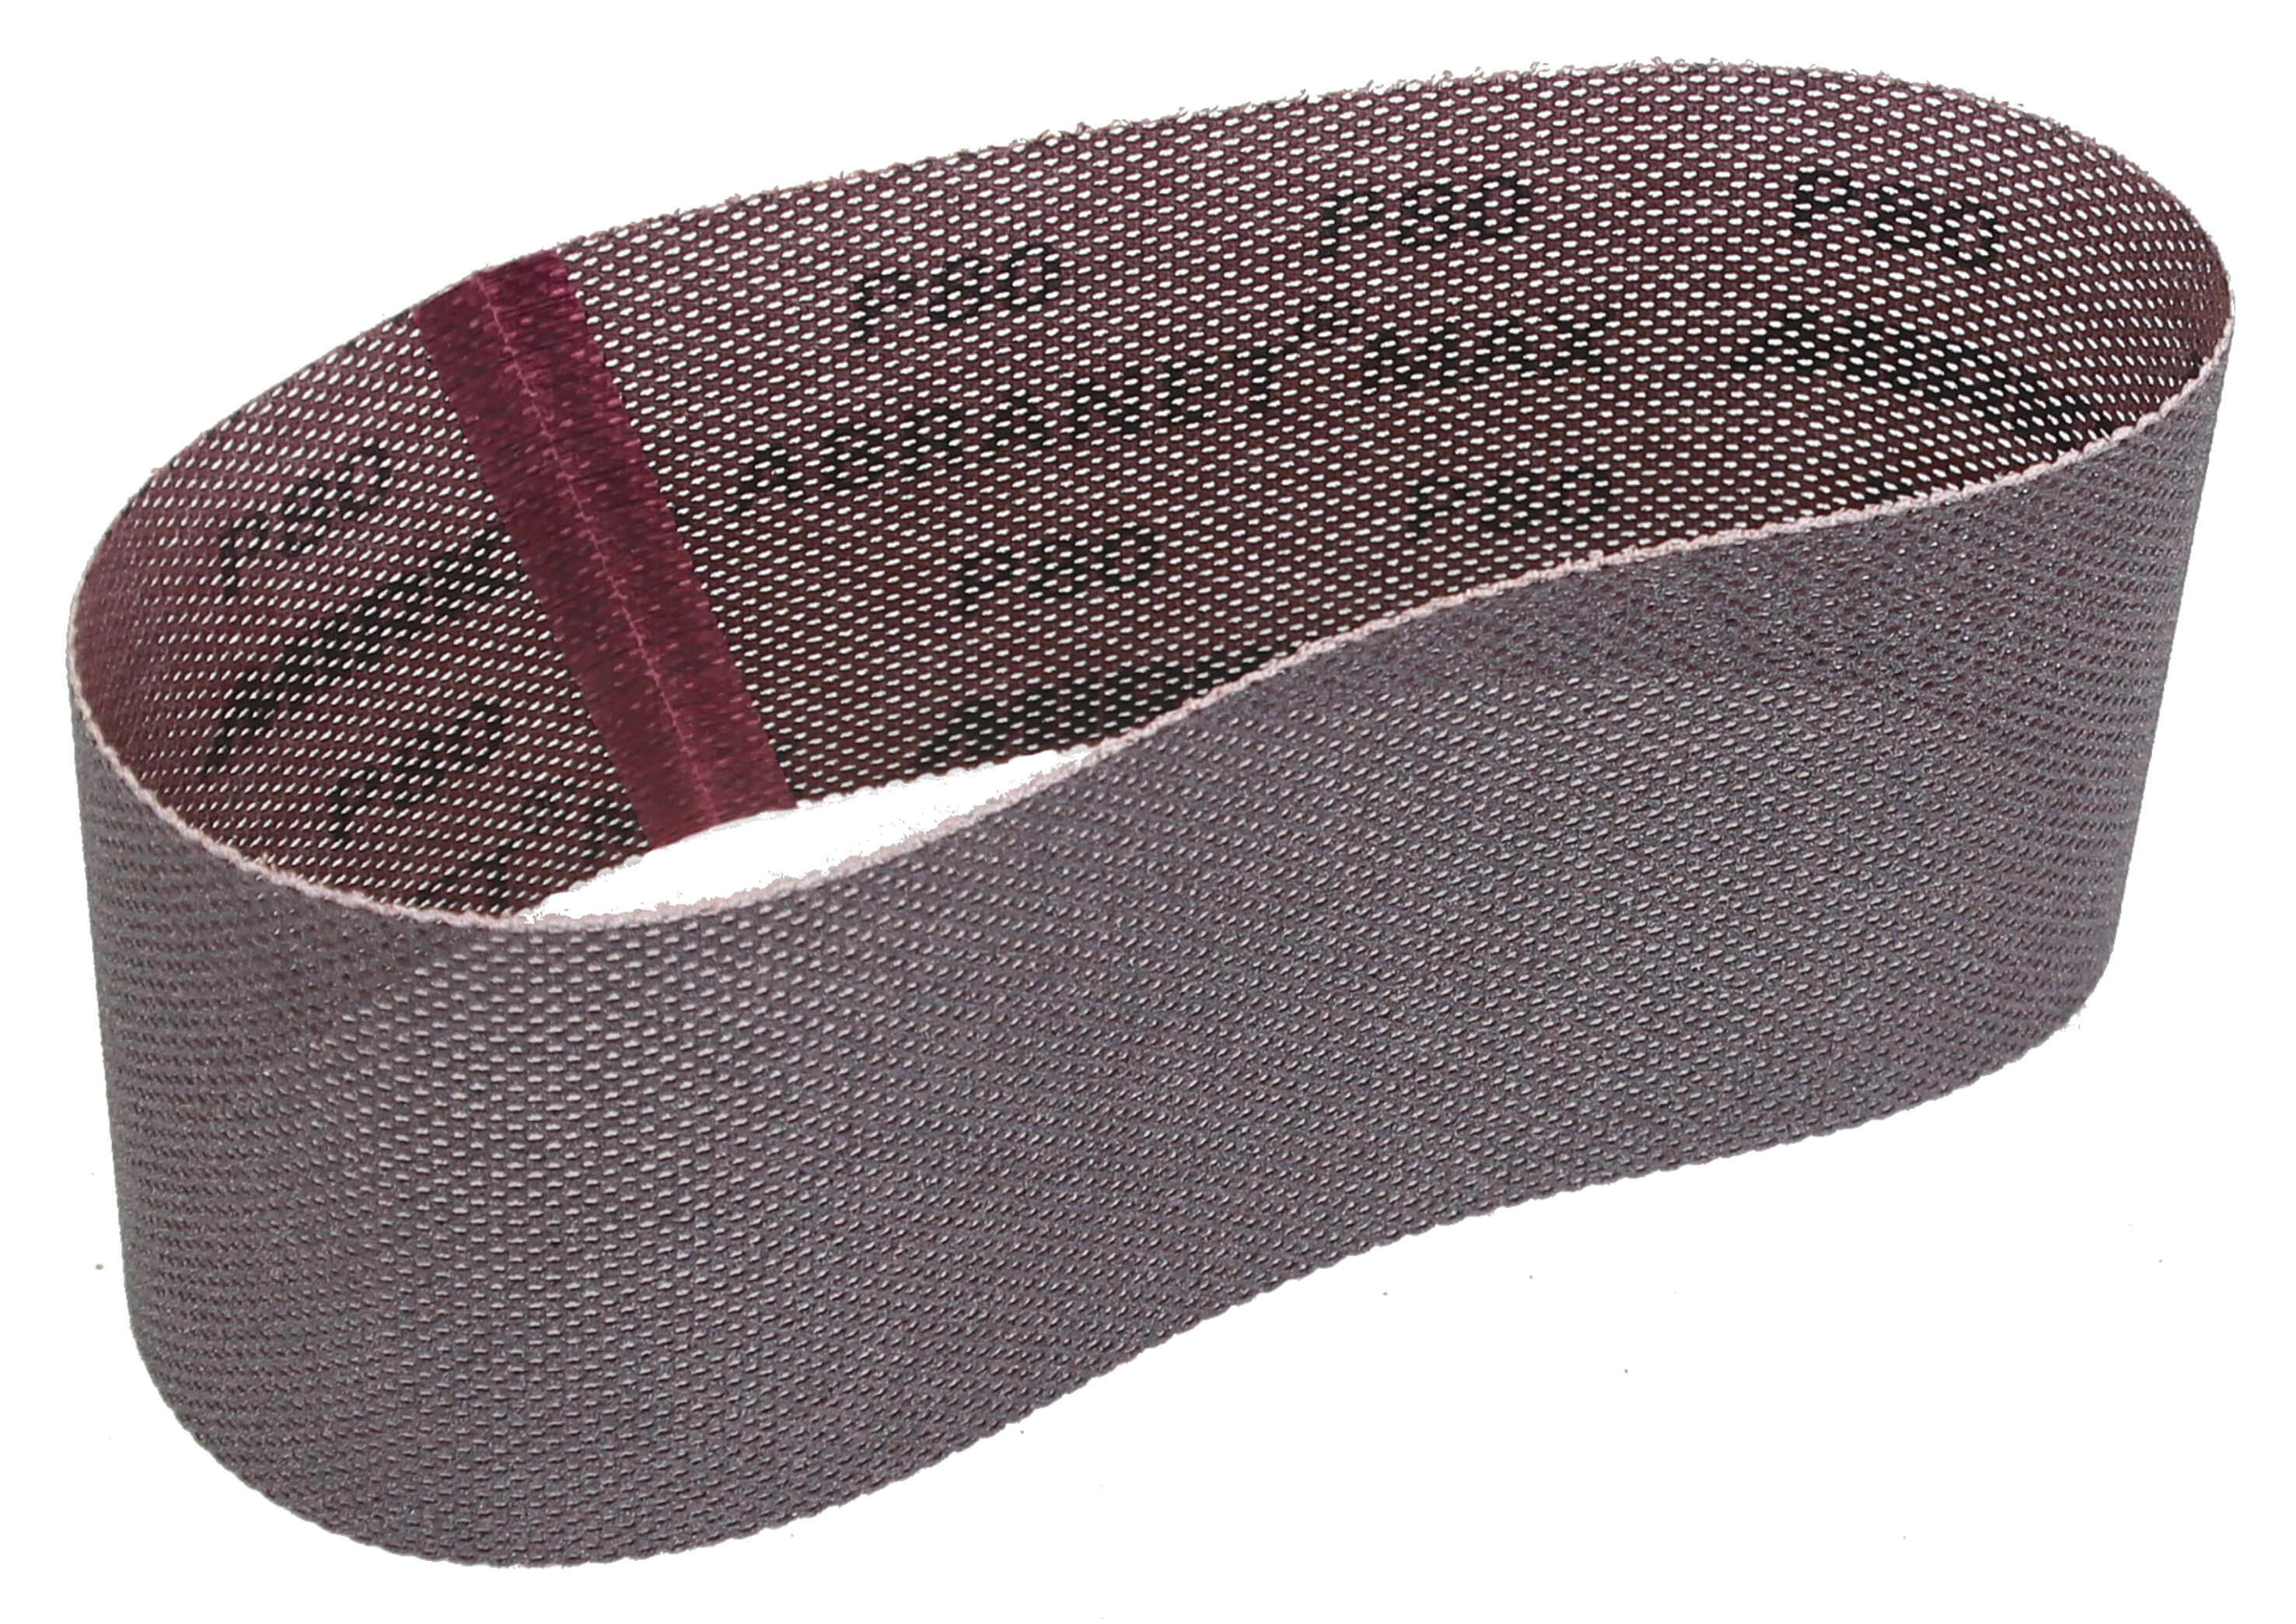 Mirka Abranet Max 3" x 24" x 100gr Sanding Belt